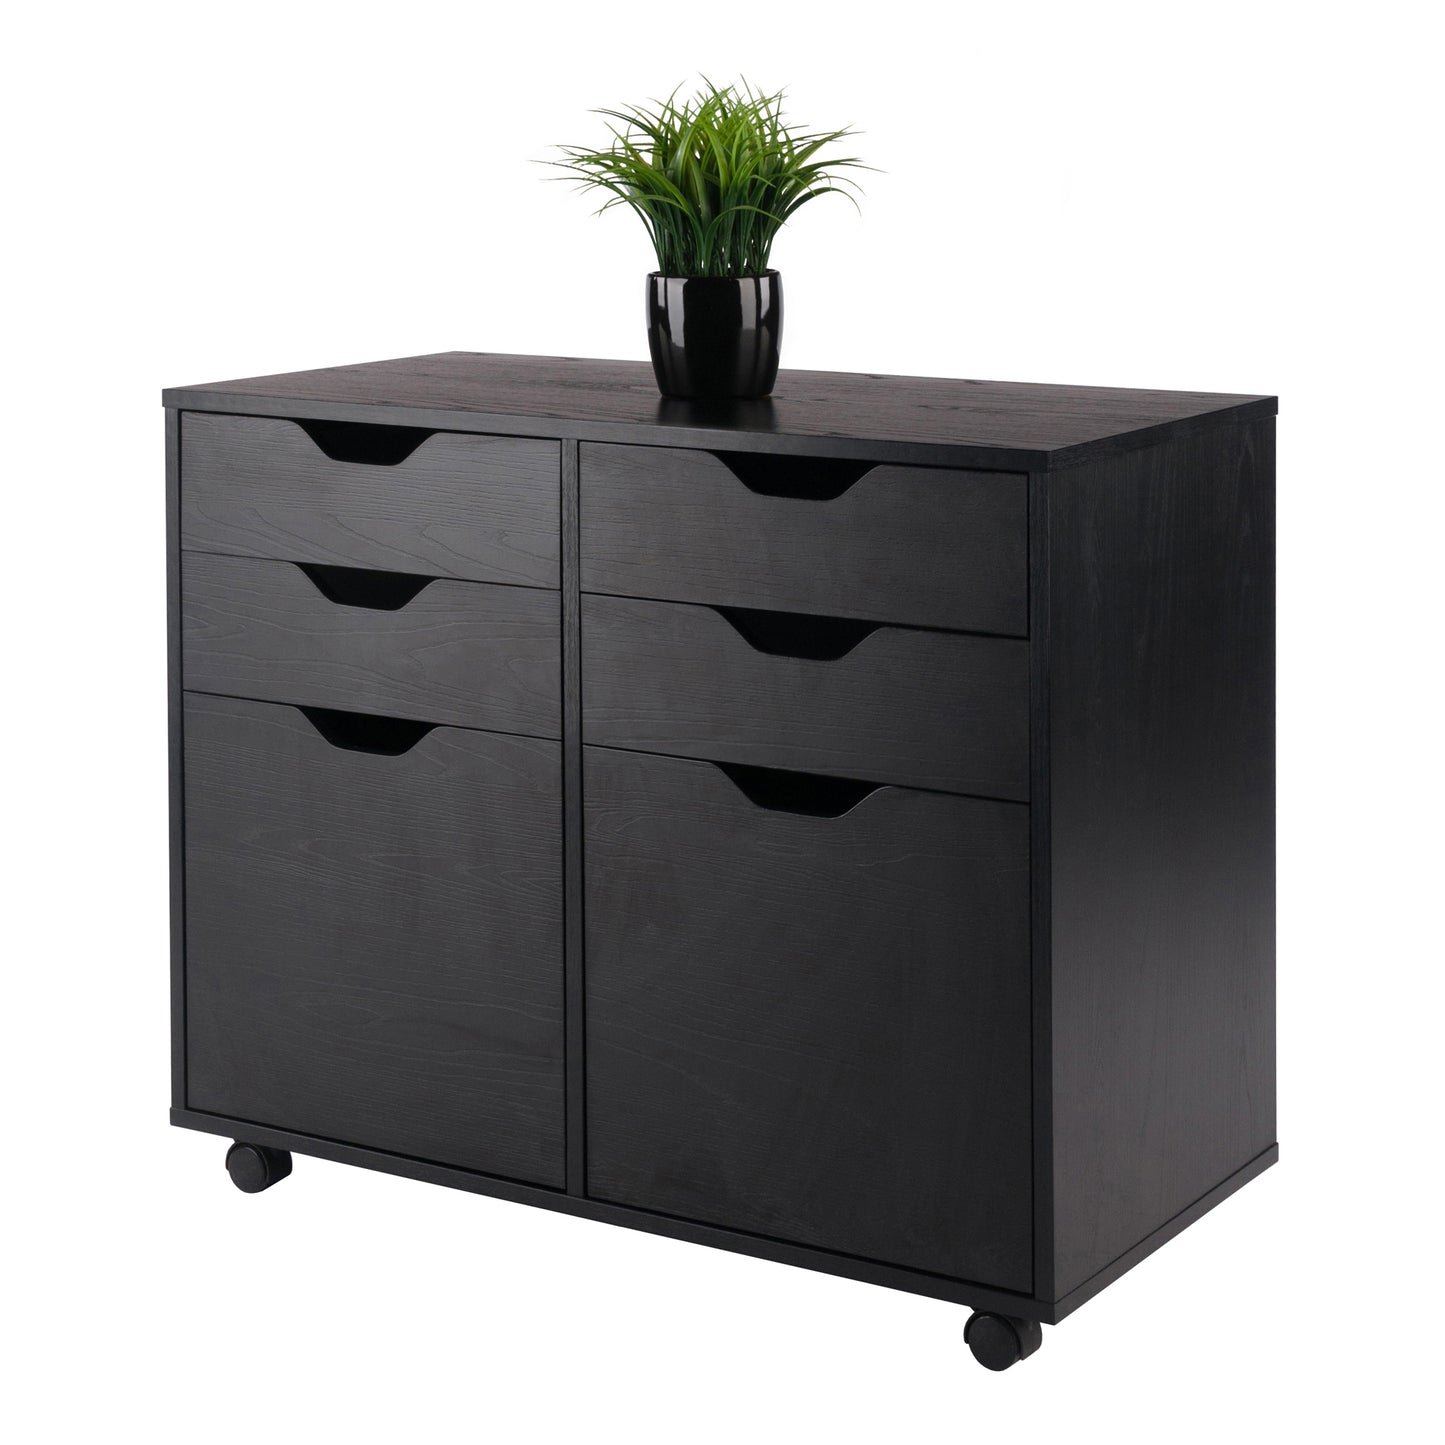 Halifax Wide 2-Door Storage Cabinet, 4-Drawer, Black